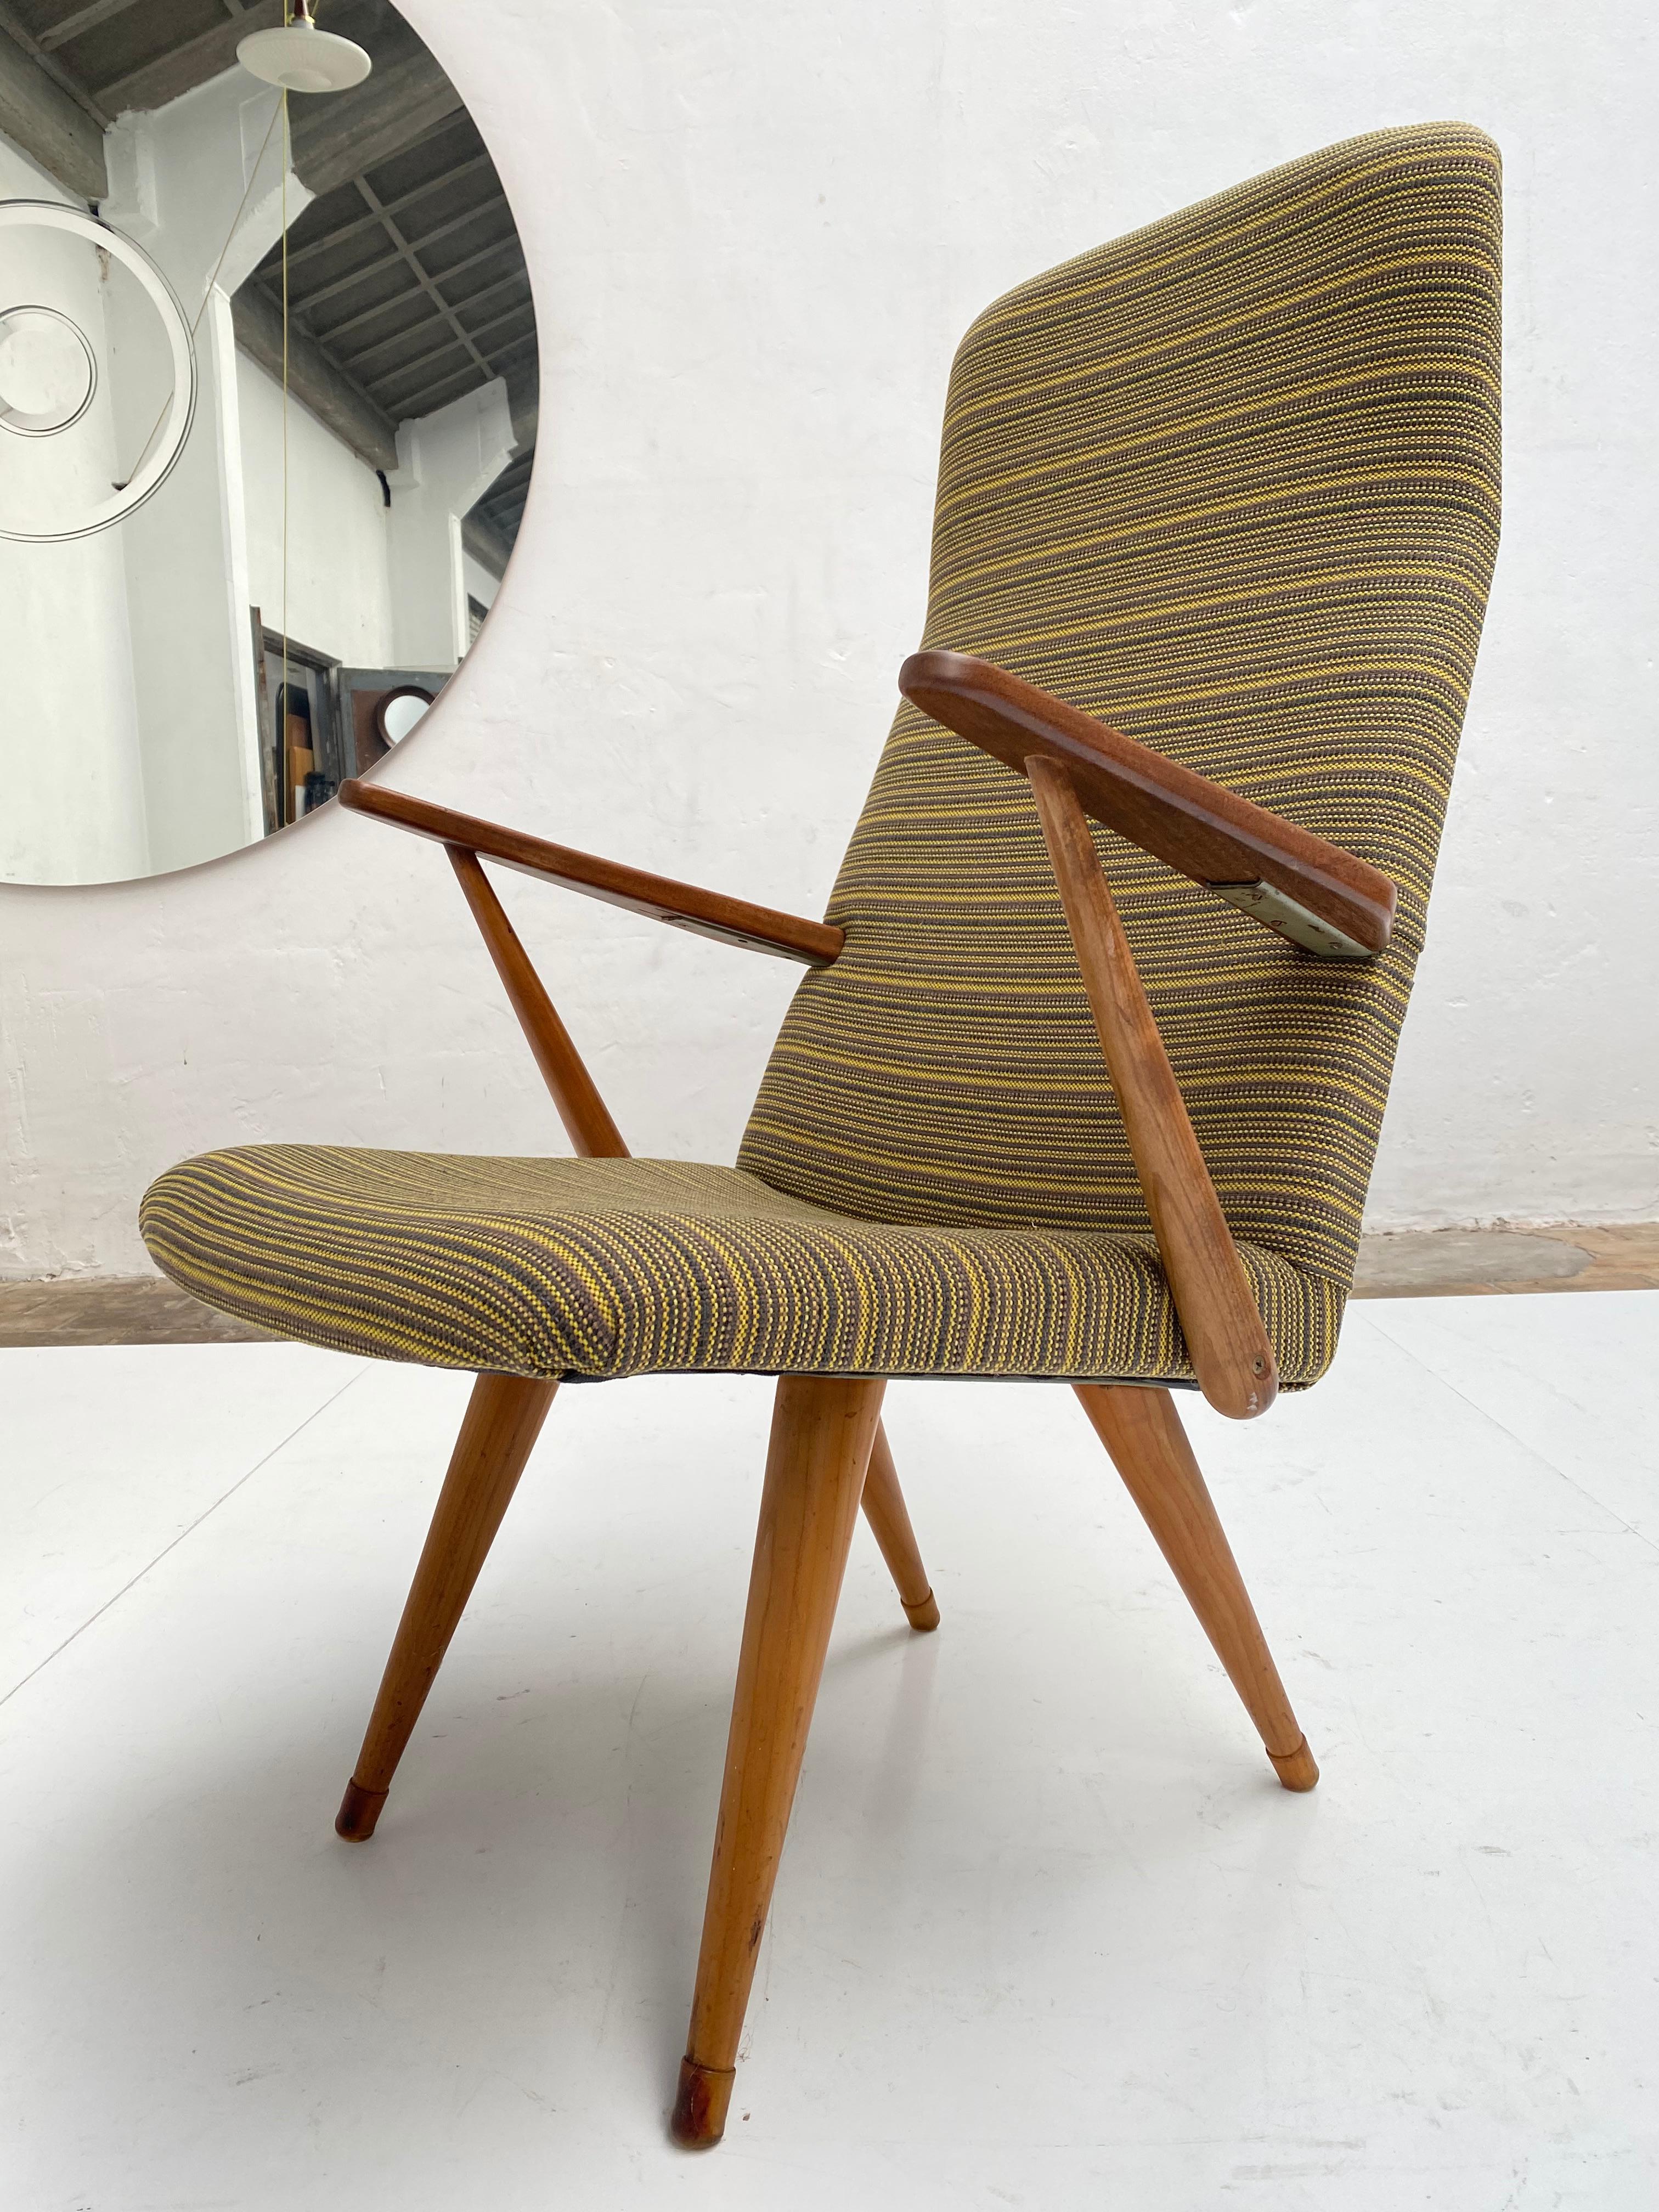 Chaise longue du fabricant suédois Akerblom.

Pieds et bras en bouleau massif avec cadre en acier

Nouvellement tapissé d'une tapisserie rayée vert moutarde et jaune de De Ploeg.